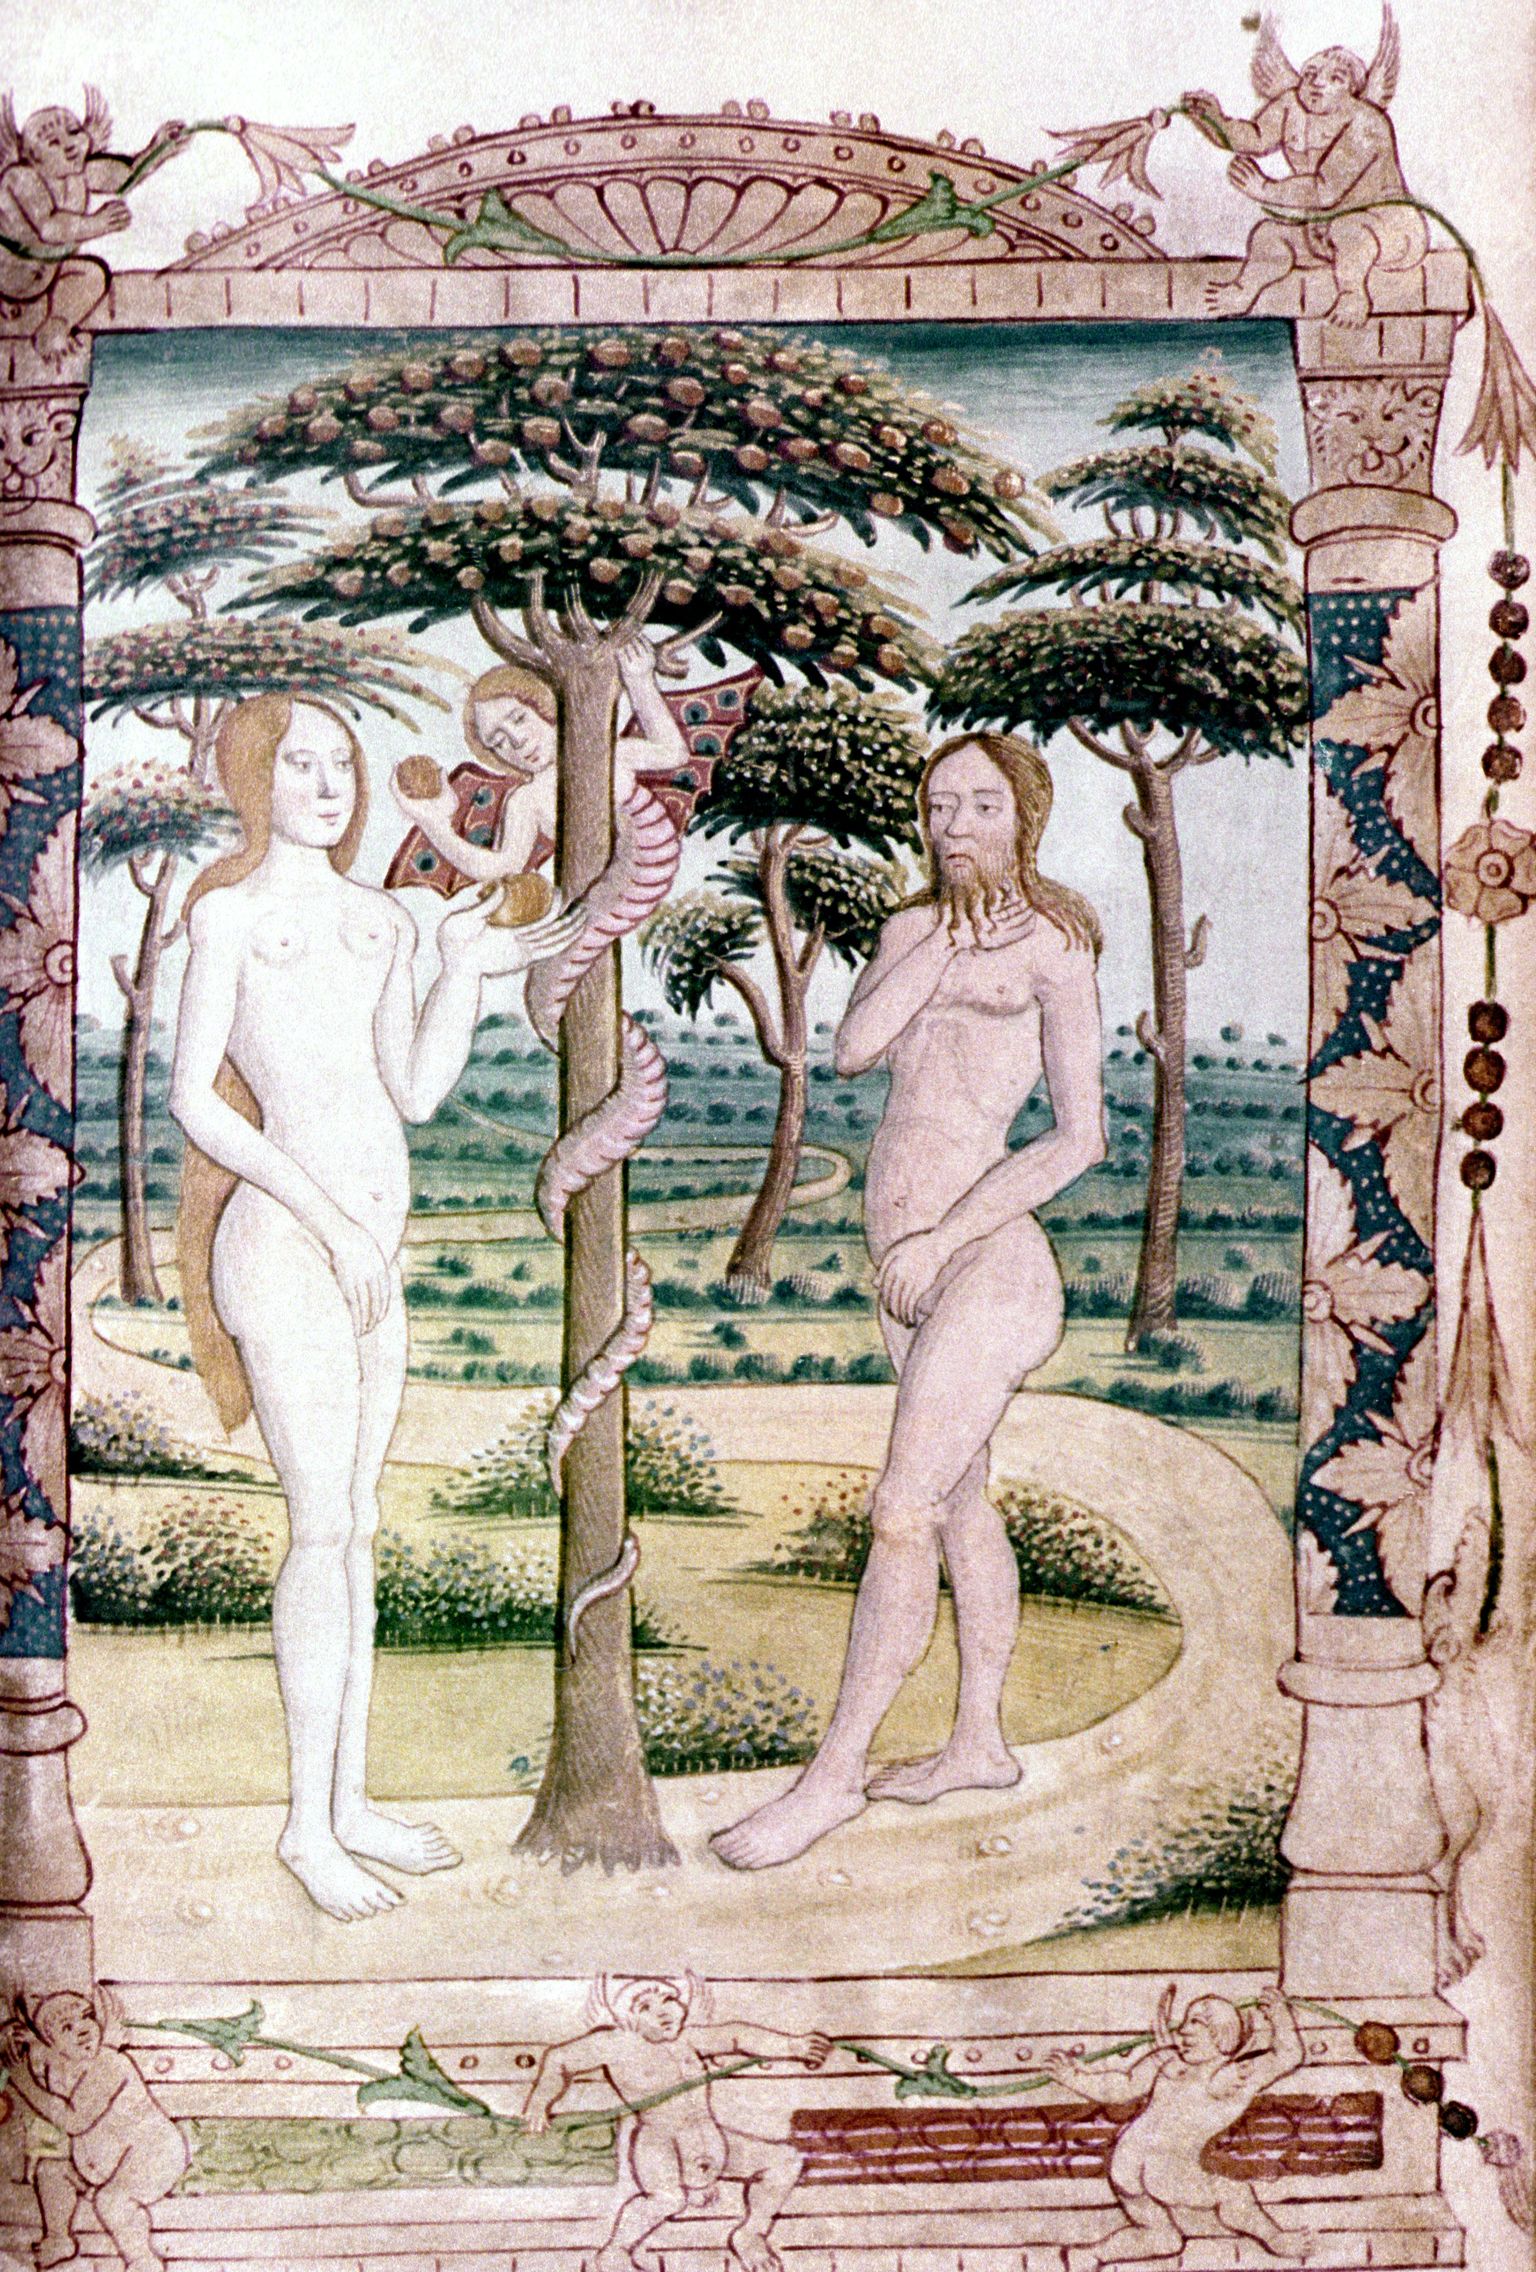 Keskaegne käsikiri, millel on kujutatud Aadamat ja Eevat